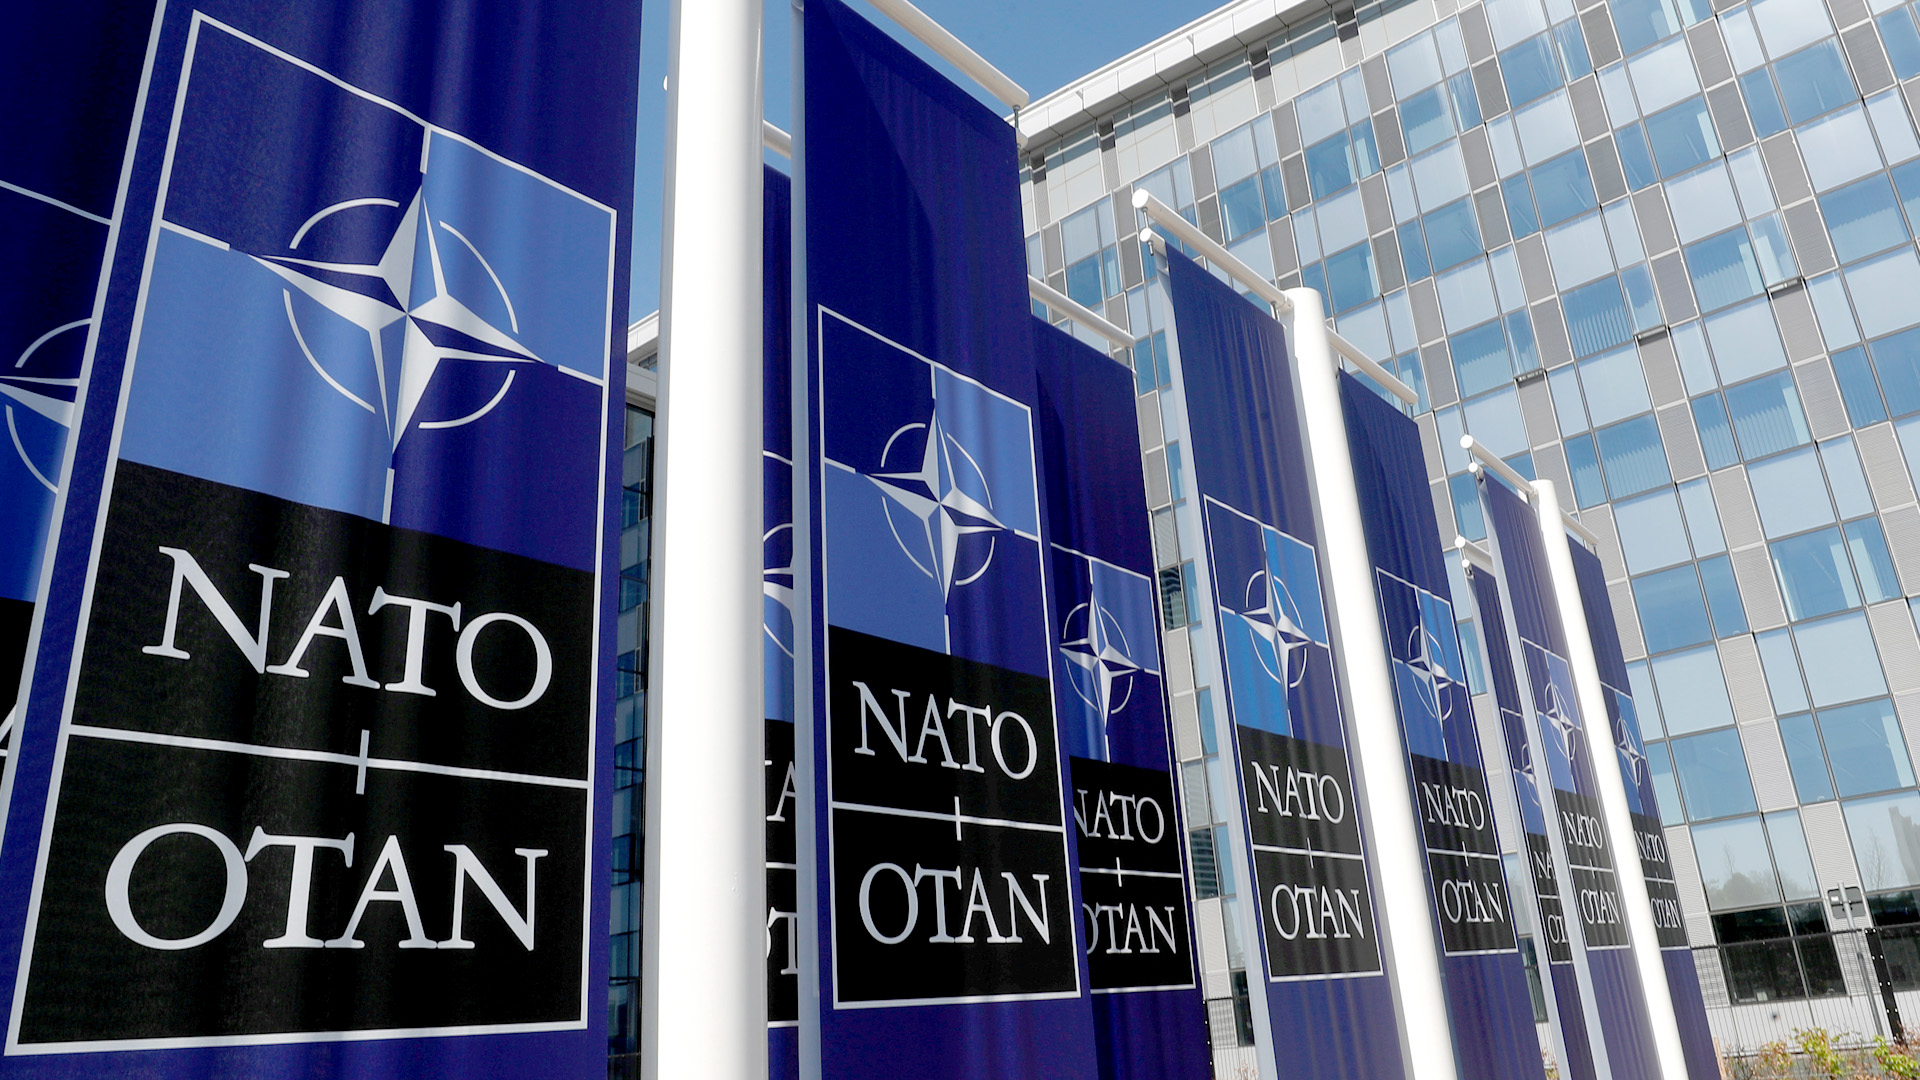 Fahnen mit dem Logo der NATO wehen vor dem NATO-Hauptquartier in Brüssel | REUTERS